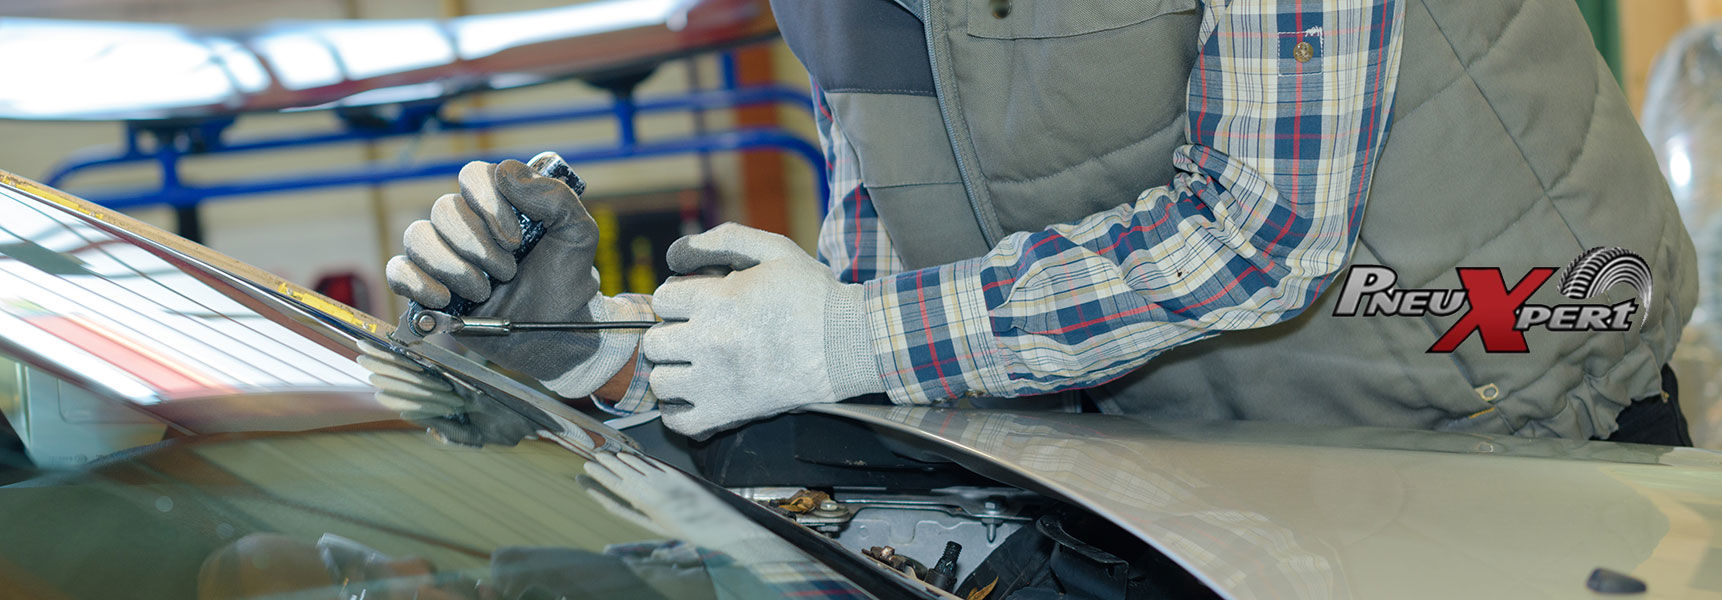 PRO-reparation et vente de vitre auto